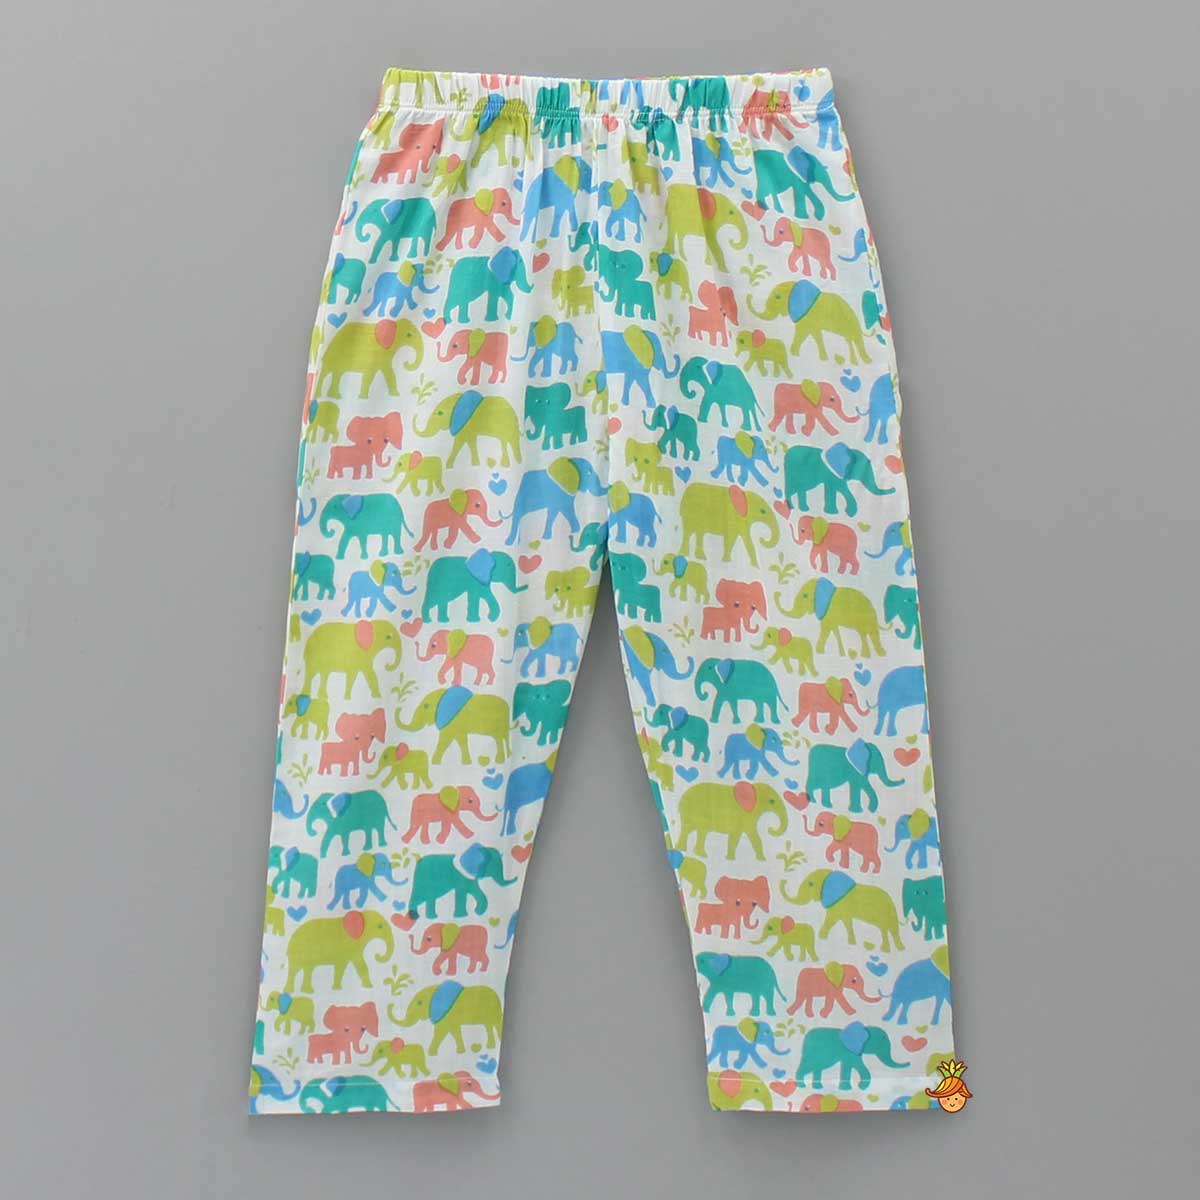 Multicolour Animal Printed Sleepwear